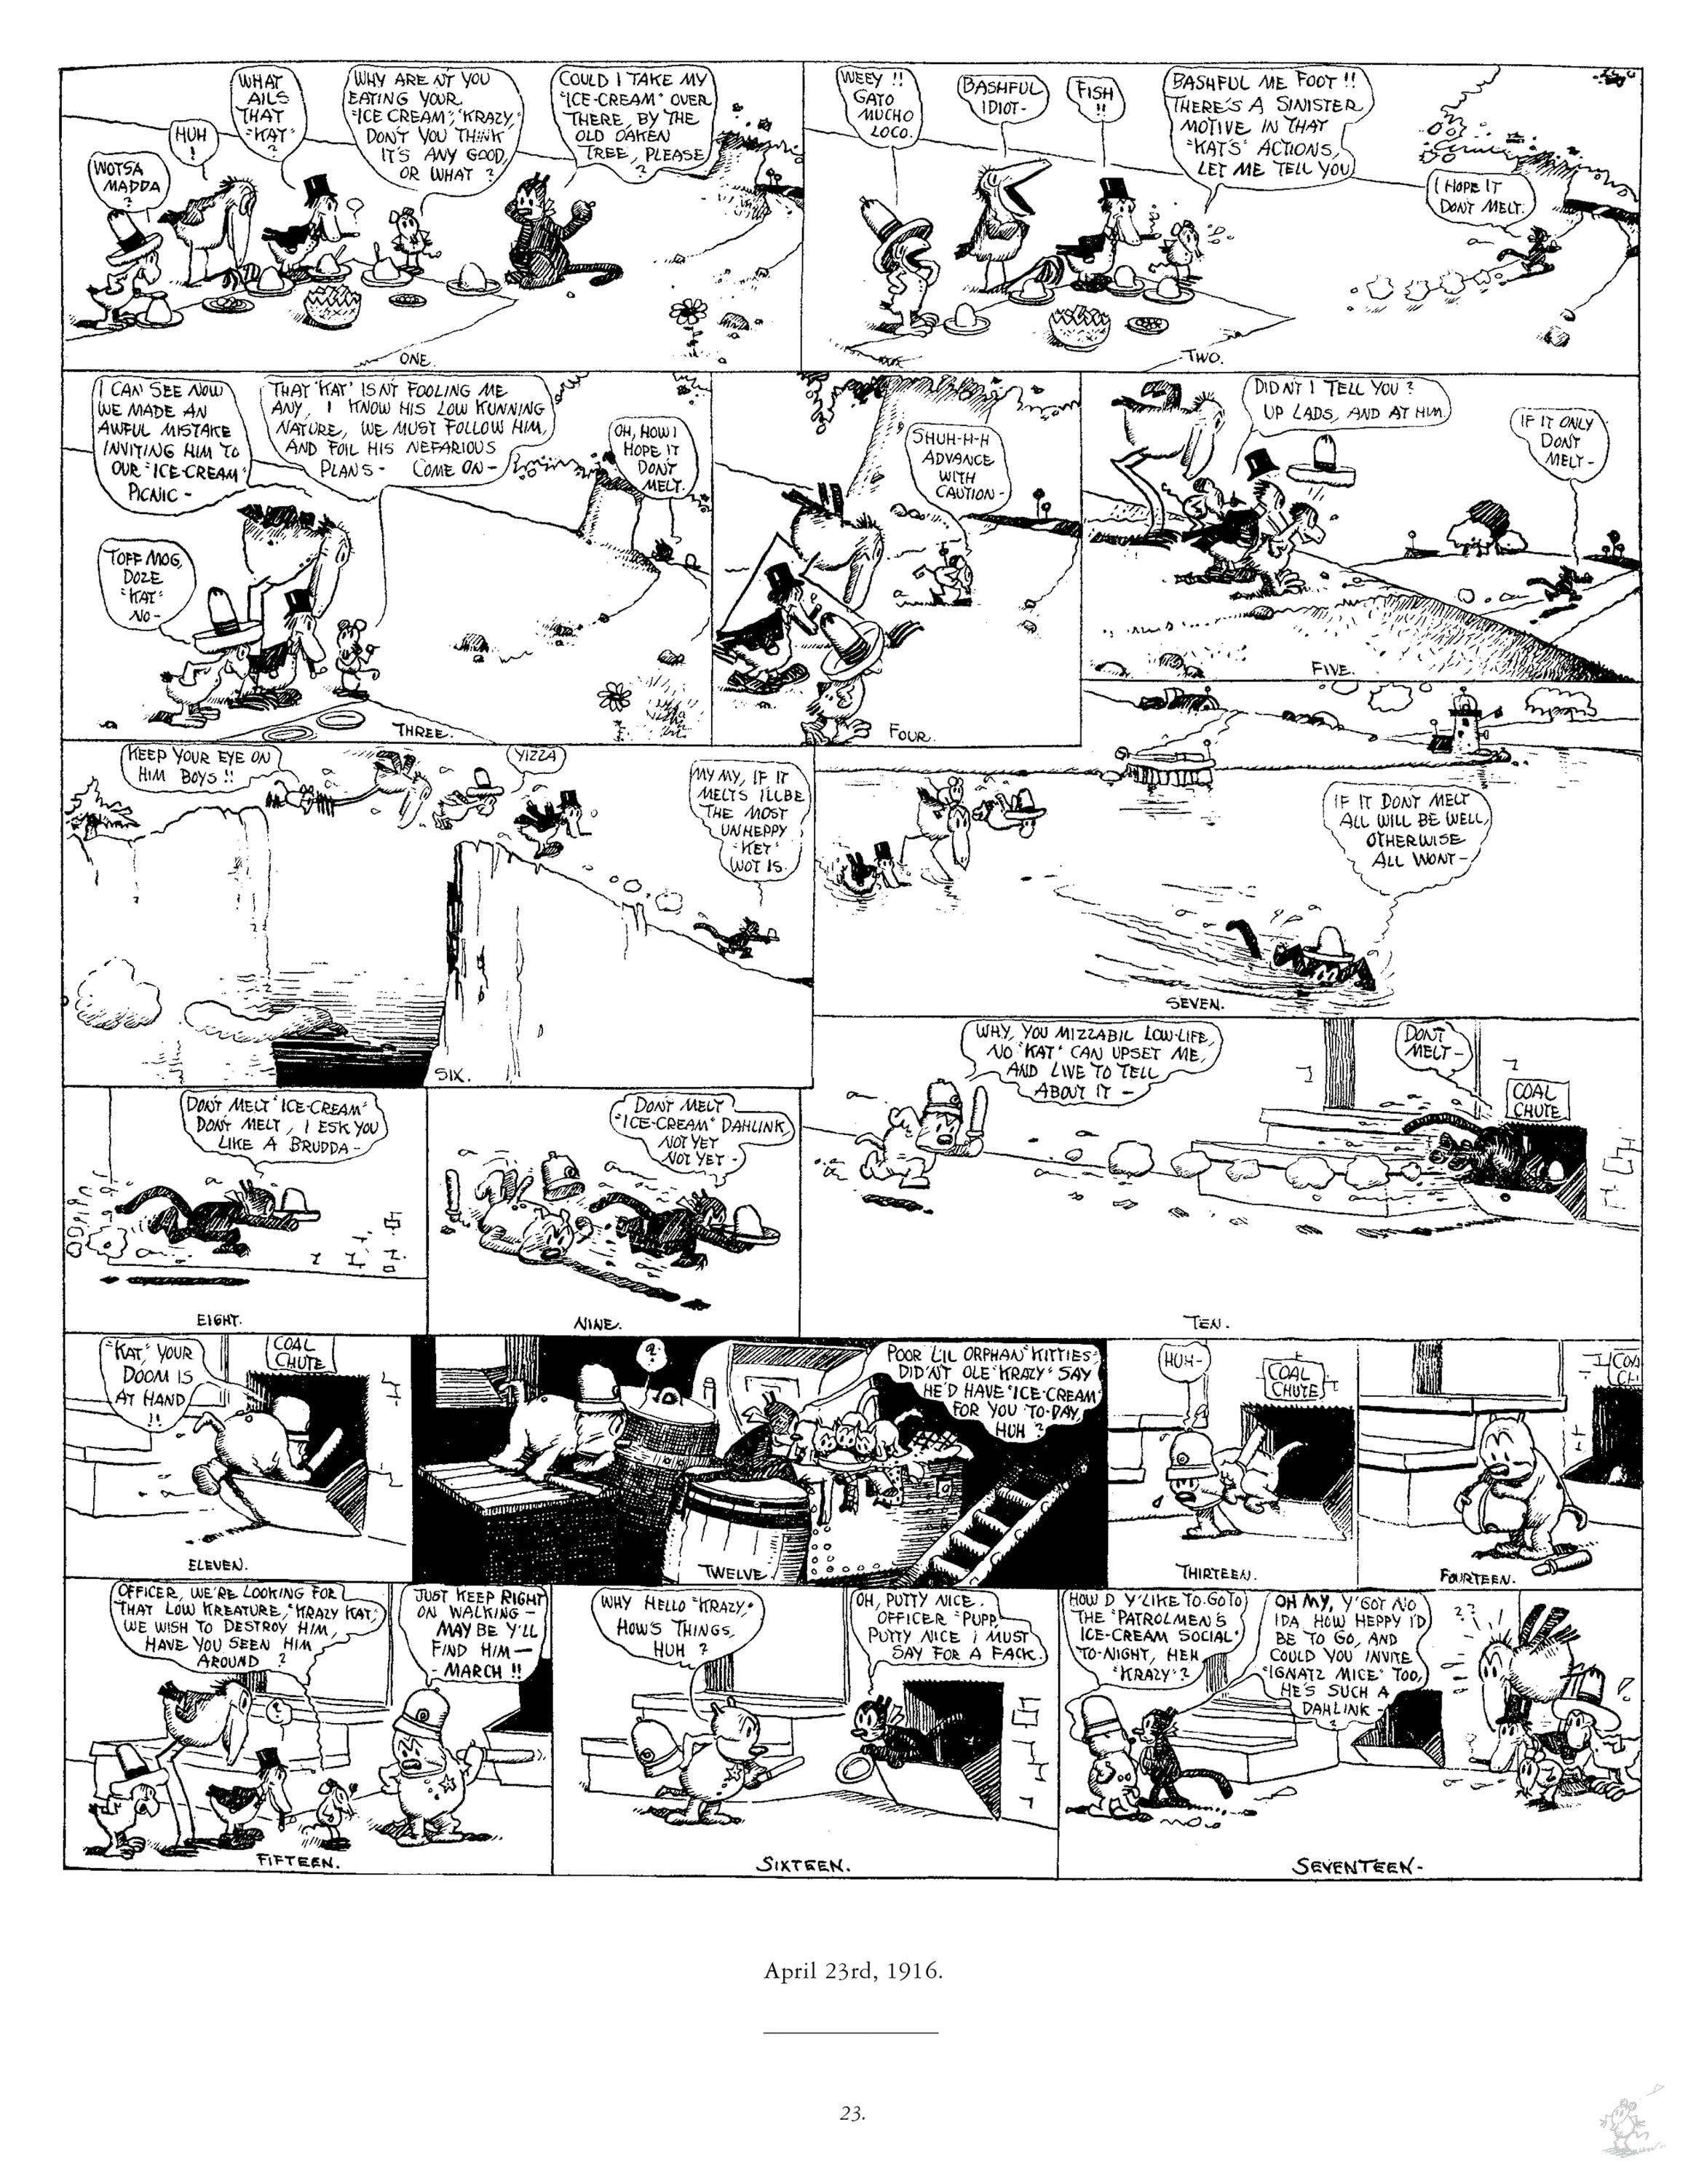 14-1916-04-23-krazykat-first-weekly-strip-1.jpg